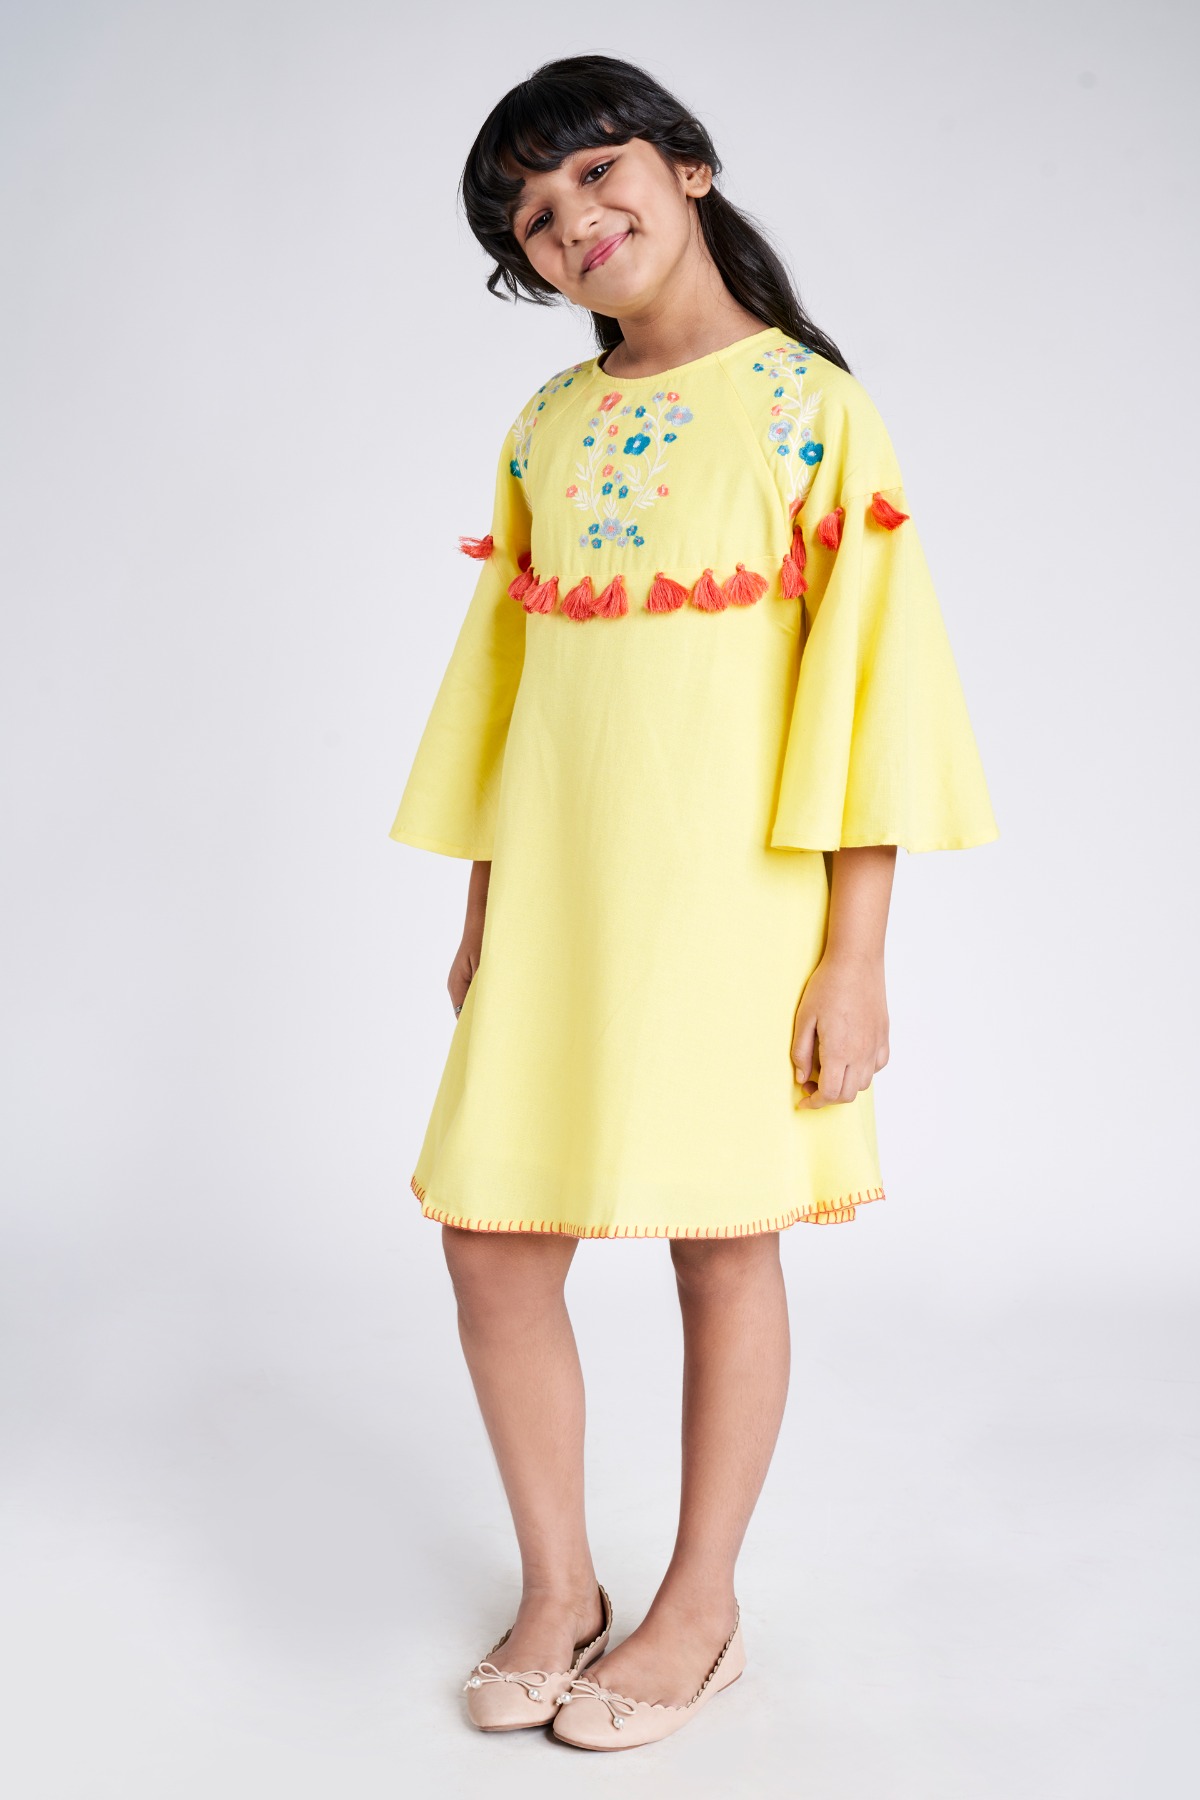 Indian Wear, Ethnic Wear for Girls | Little Muffet